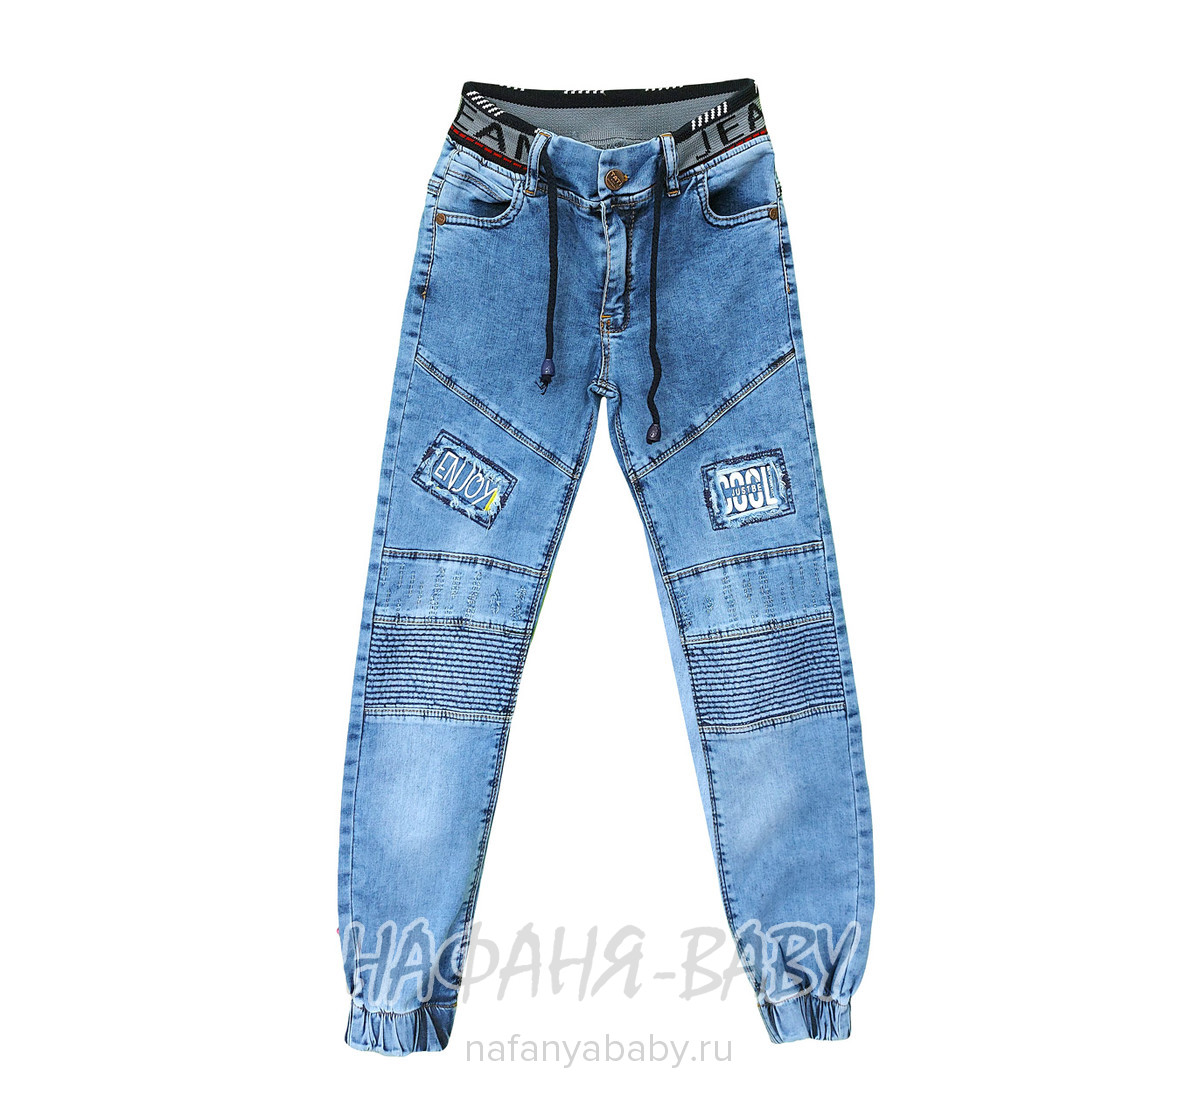 Подростковые джинсы TATI Jeans арт: 2109, 10-15 лет, 5-9 лет, оптом Турция